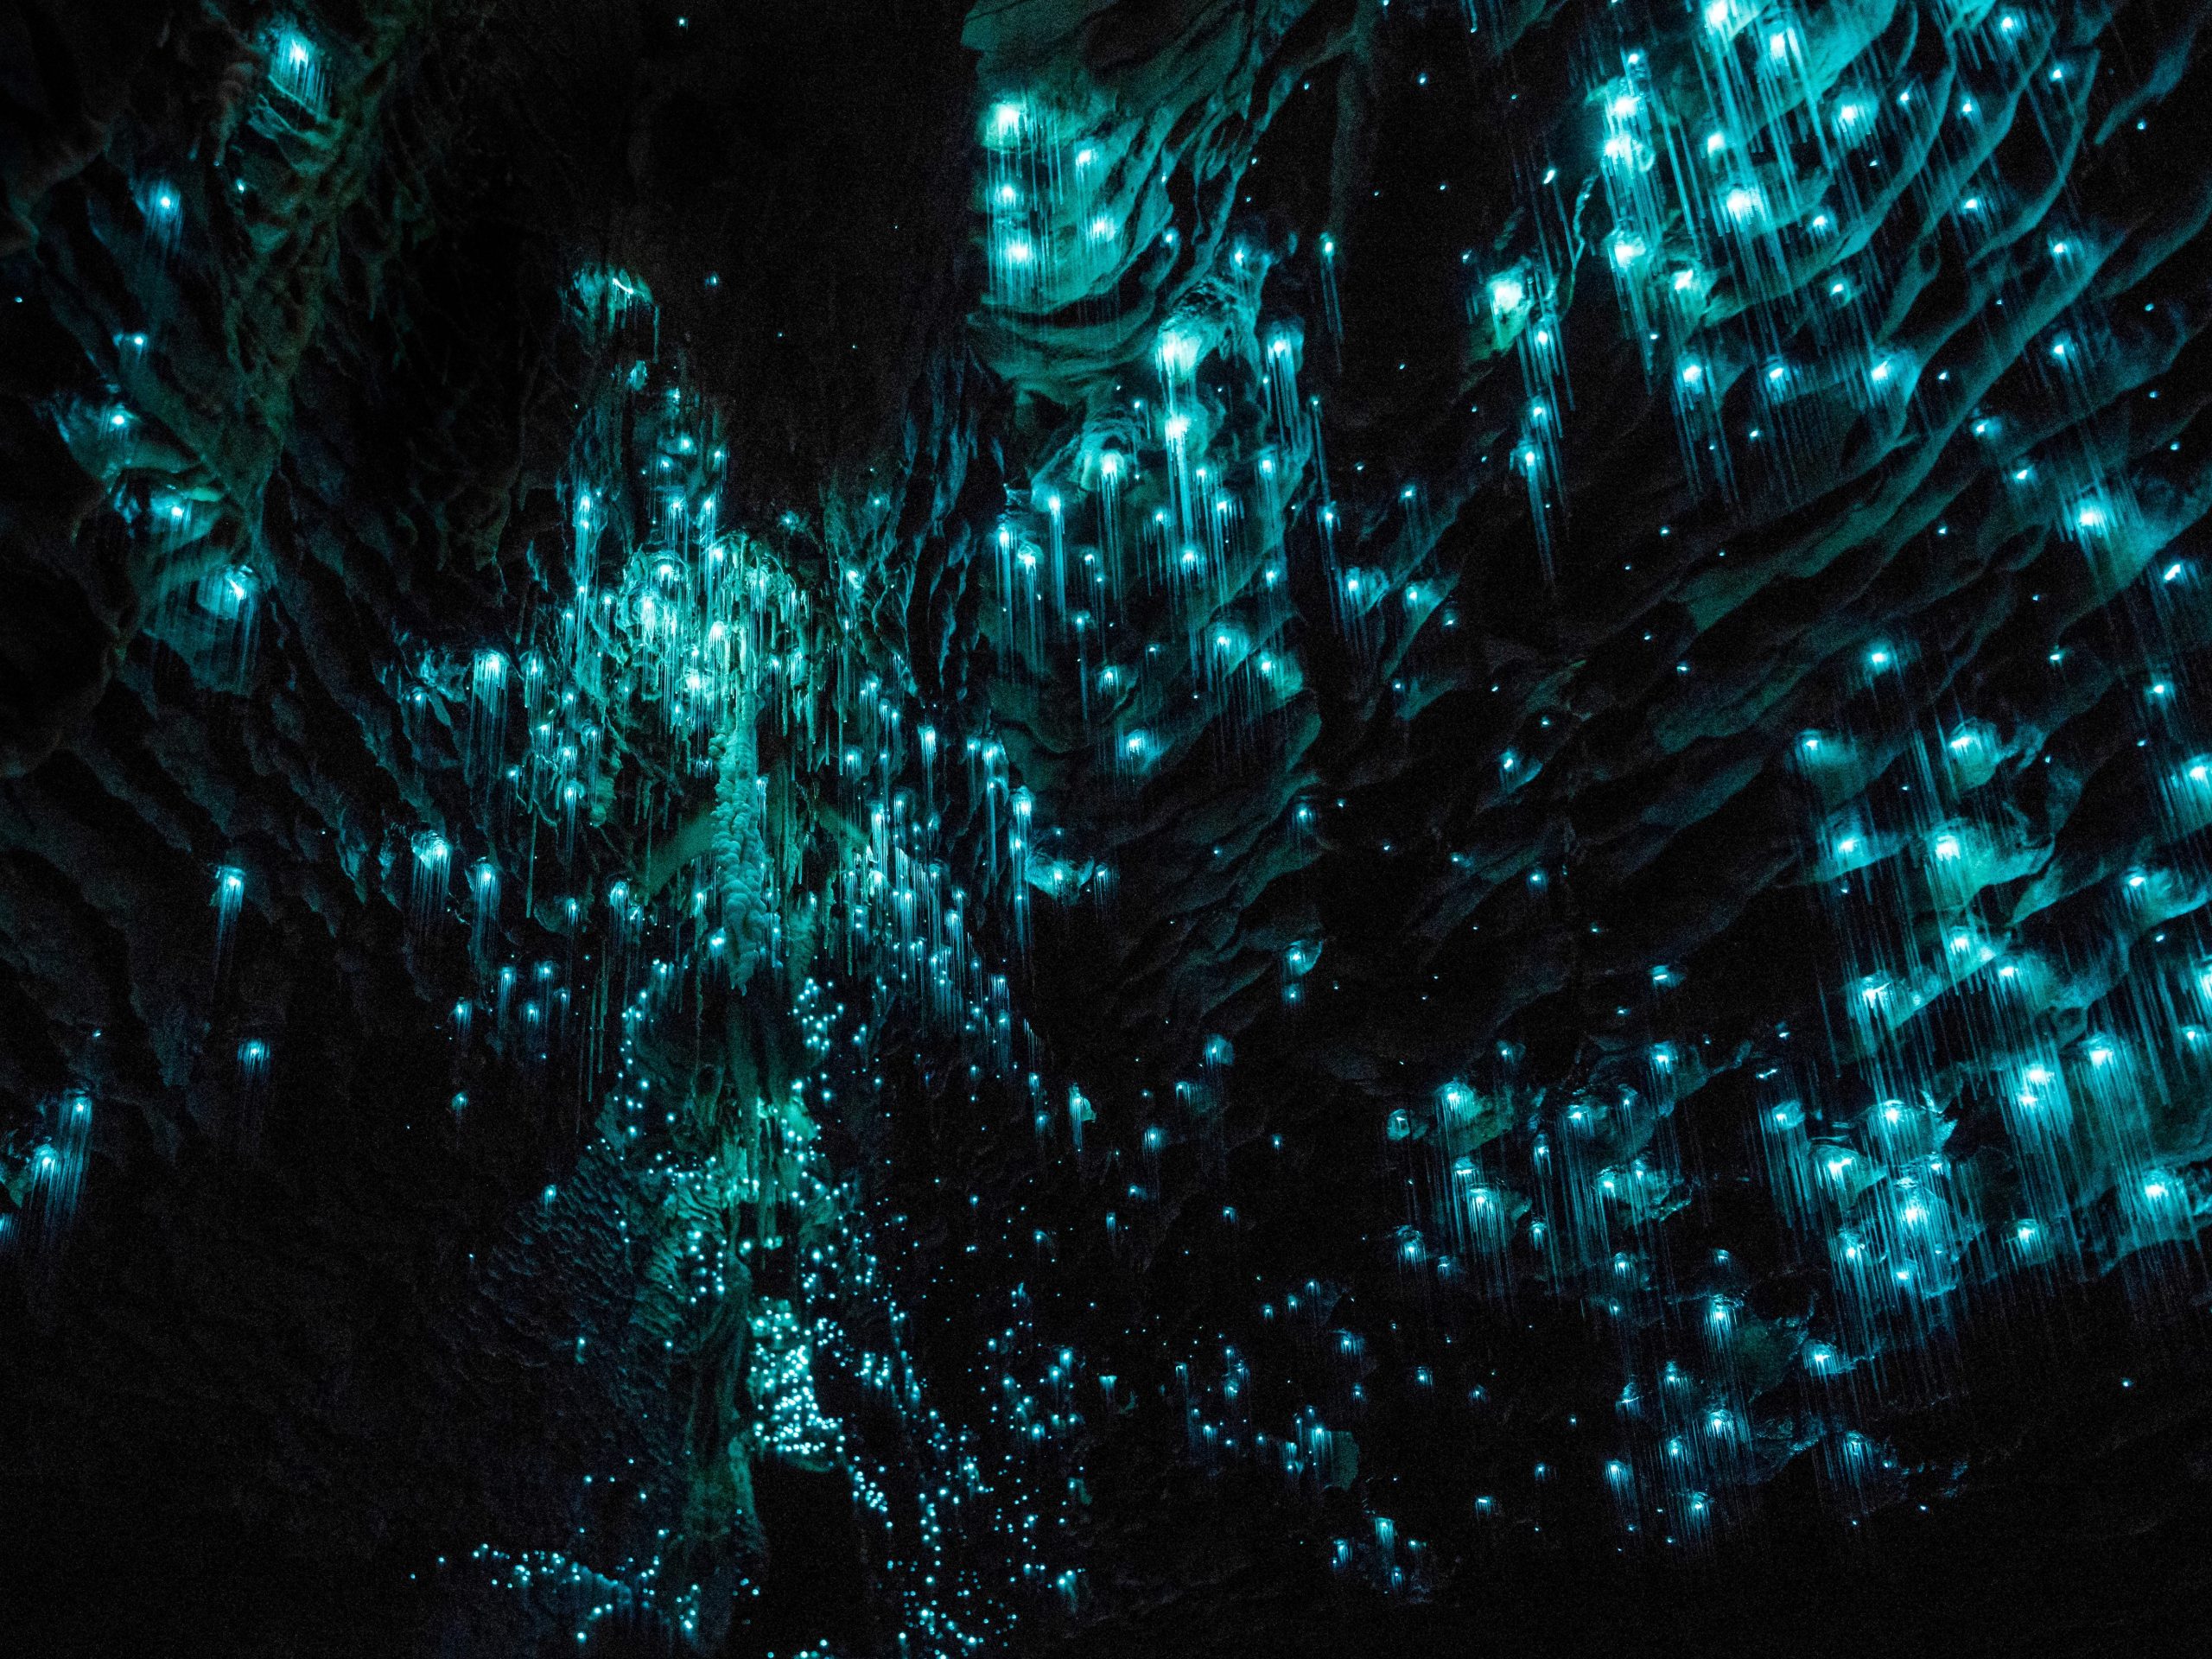 Kleine blauwe fluorescerende ballen van gloei wormen verspreiden zich over de donkere wanden van de grot.